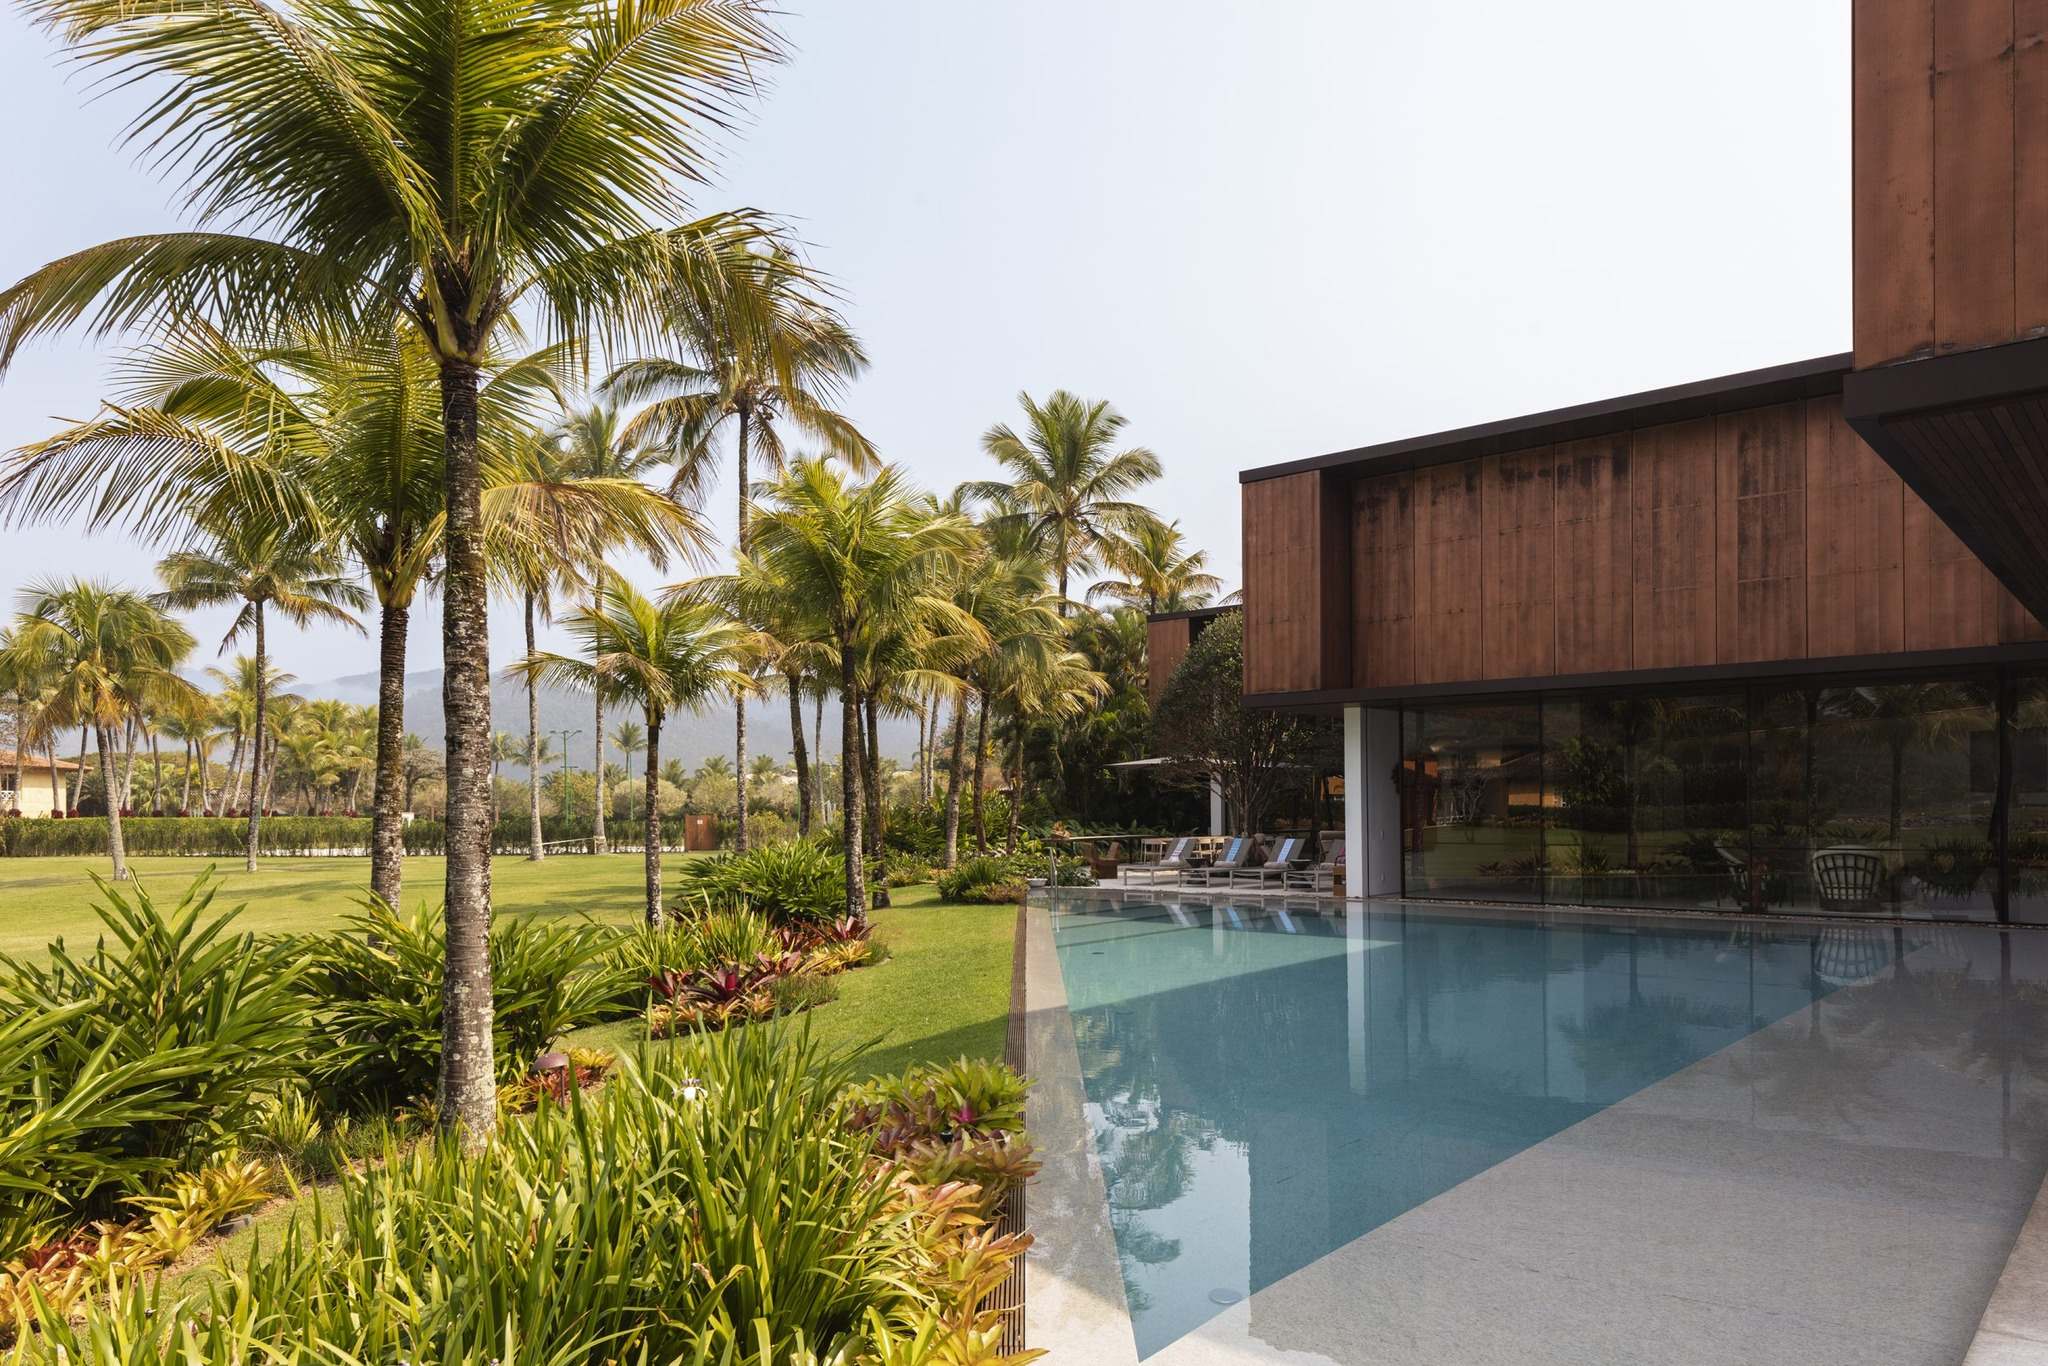 Thiết kế hồ bơi được tích hợp trong khuôn viên sân vườn của biệt thự 2 tầng phong cách tropical